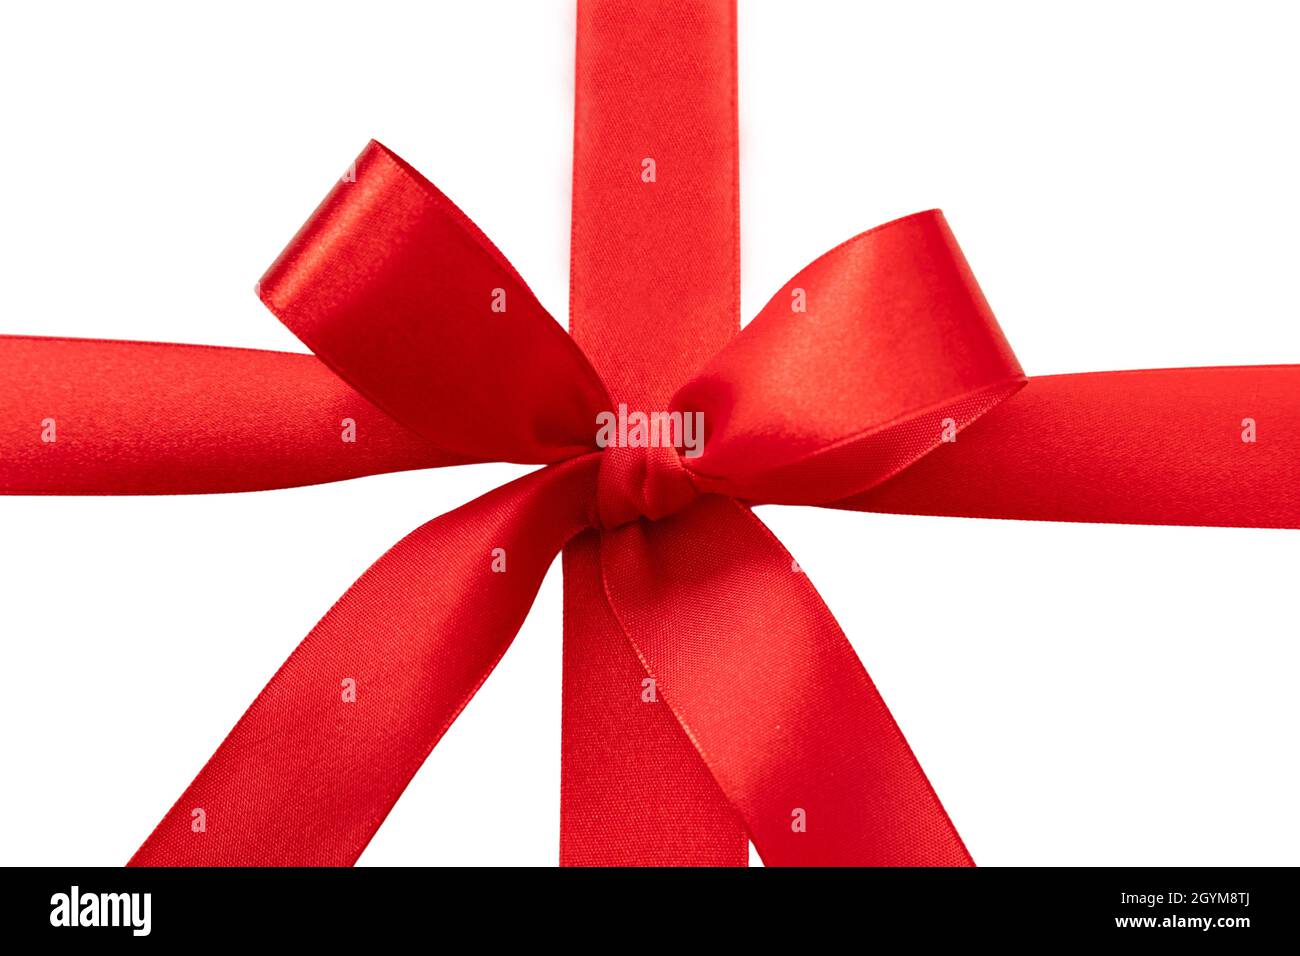 Geschenk rotes Band mit Schleife isoliert auf weißem Hintergrund, Weihnachten oder valentine Geschenk Satin lockige Dekoration, Design-Element, Draufsicht. Stockfoto